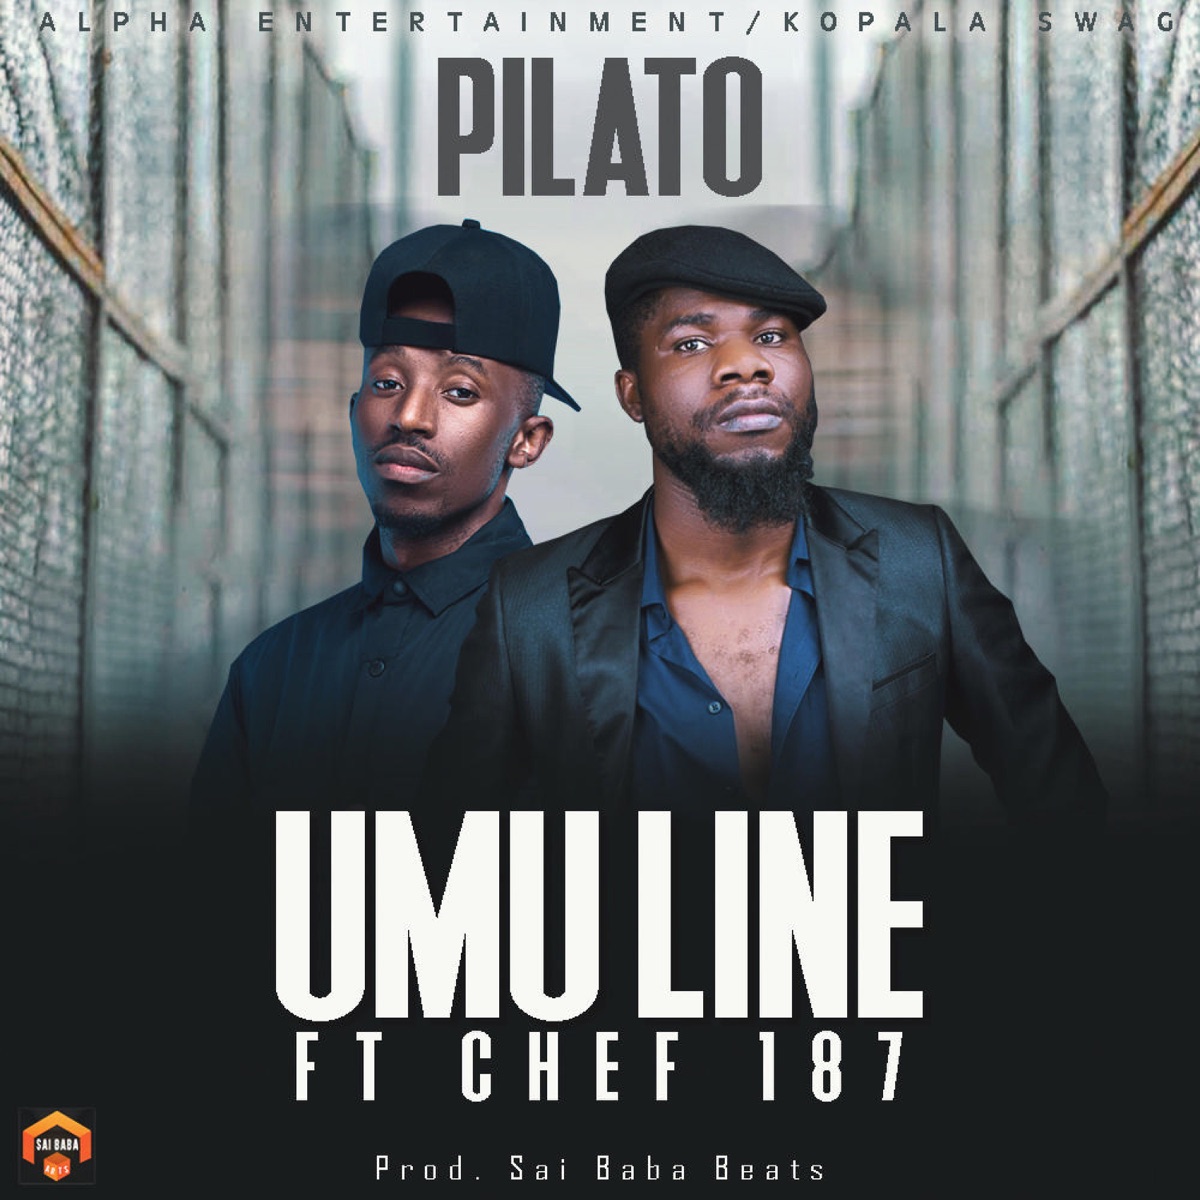 PilAto Ft Chef 187 - Umulaini